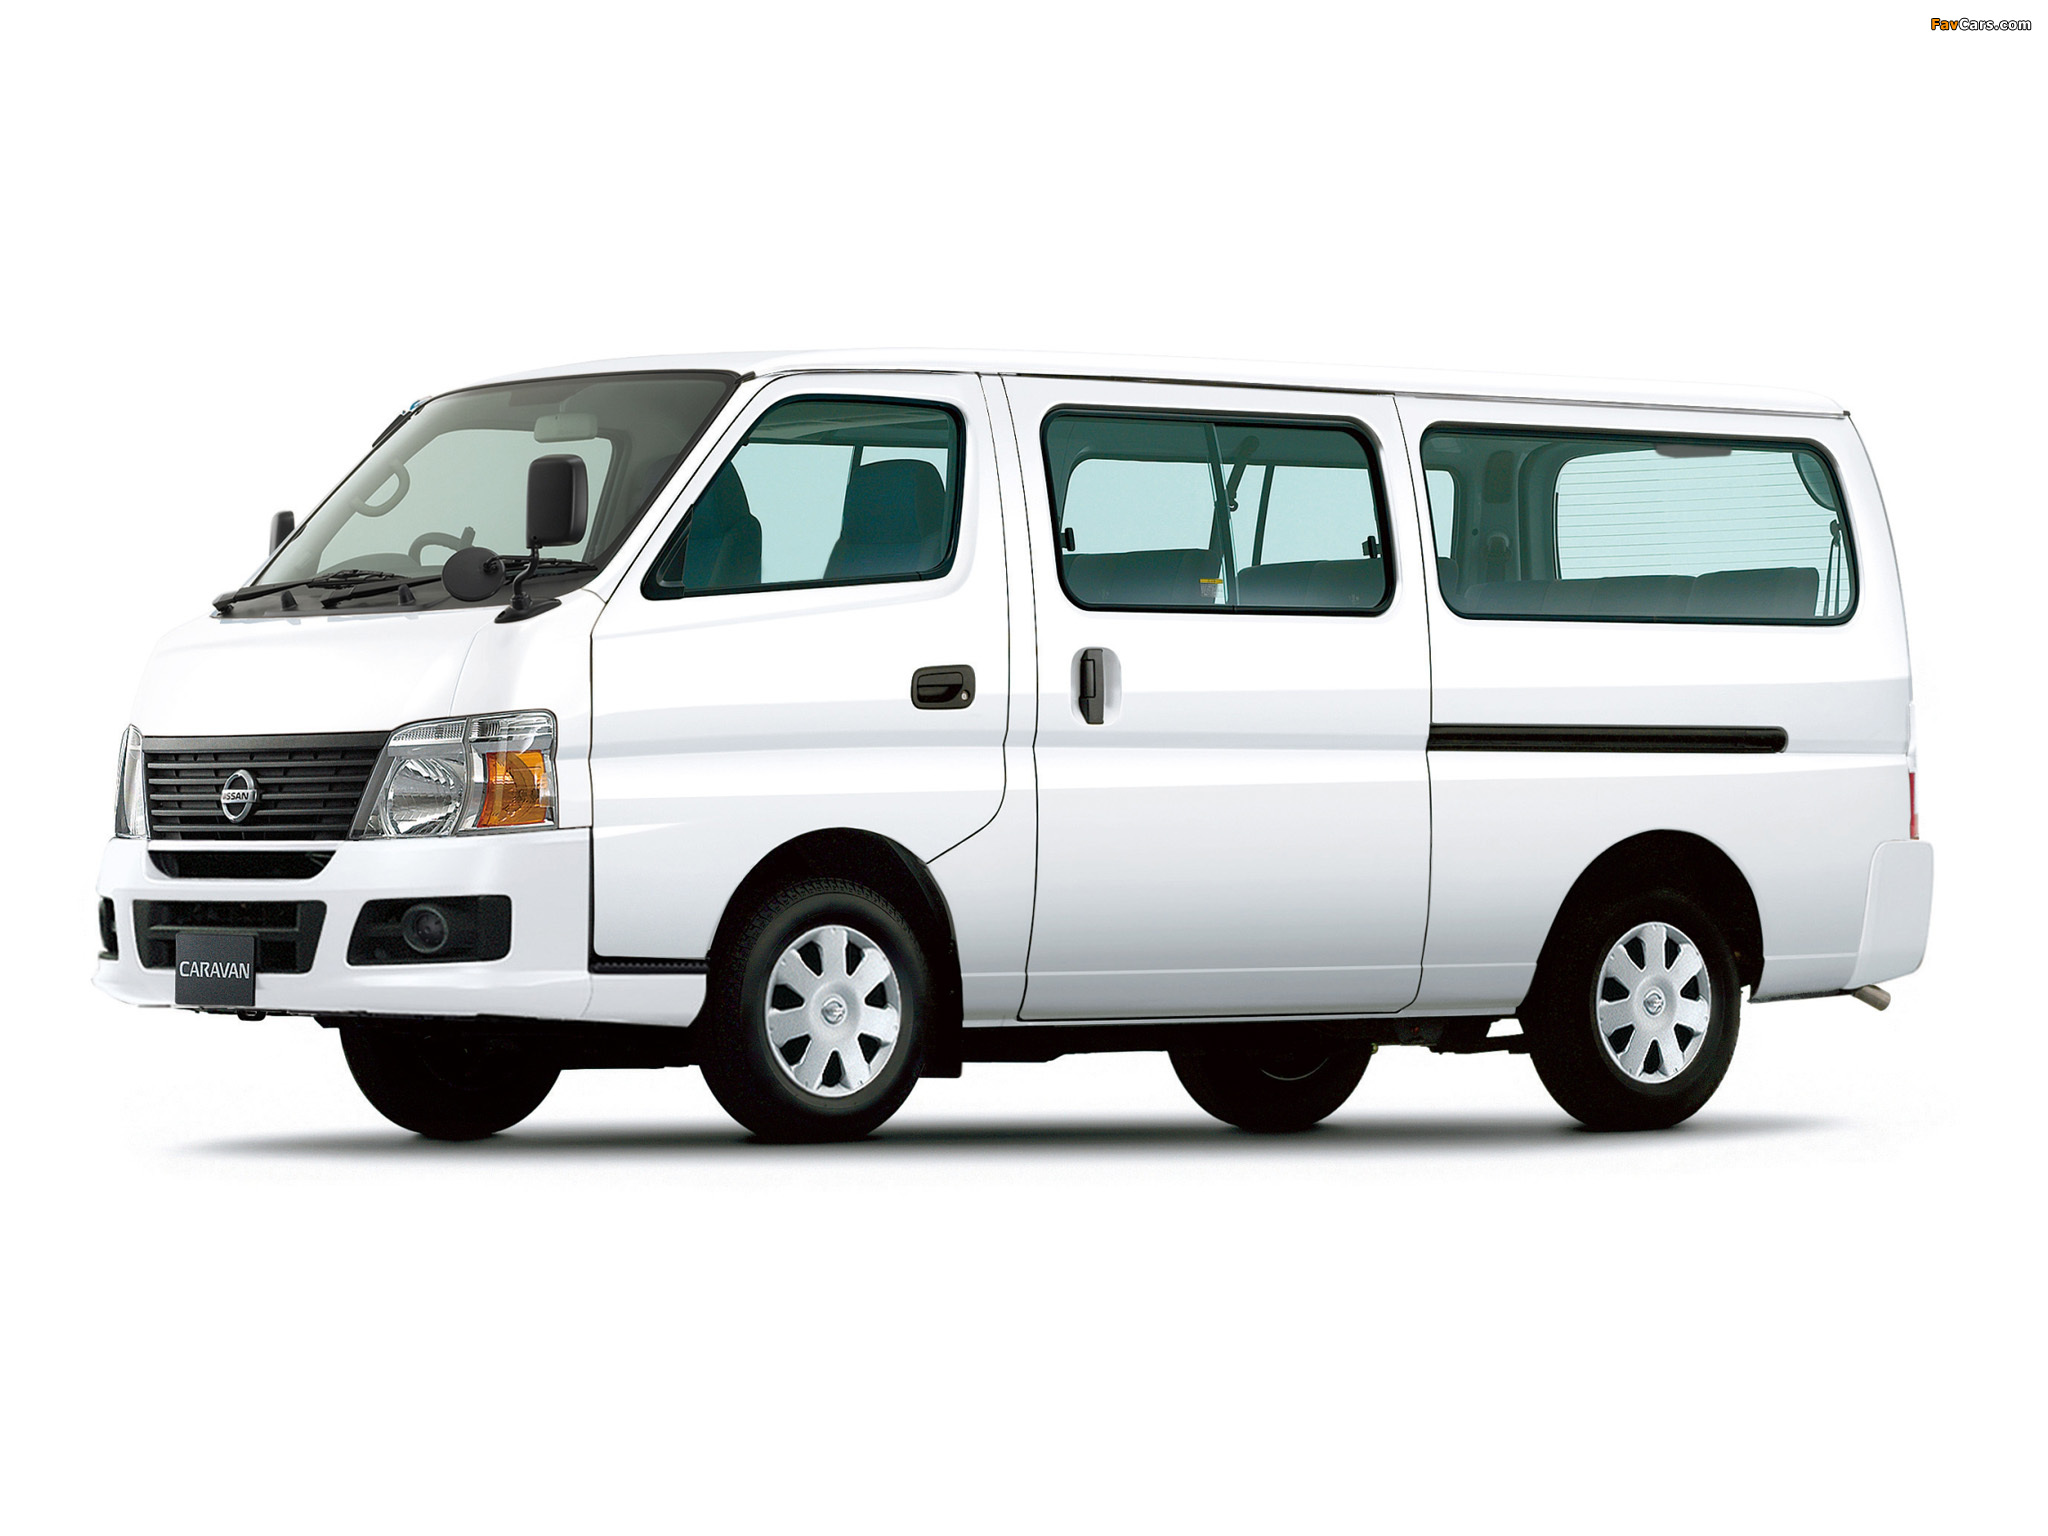 Nissan Caravan LWB (E25) 2005 images (2048 x 1536)